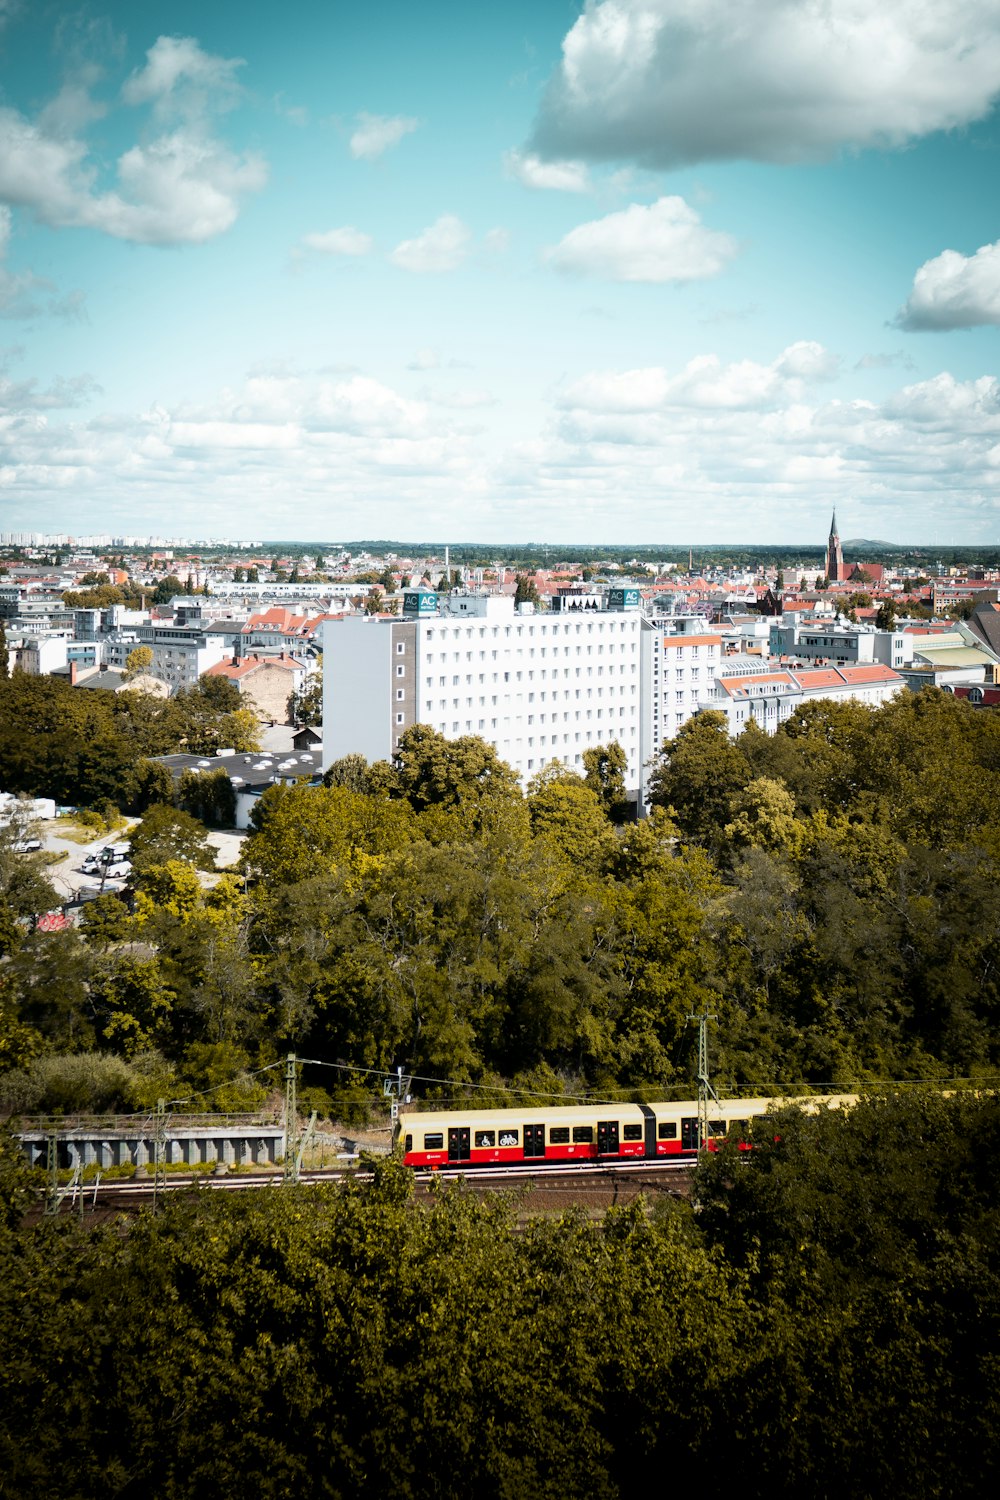 Train blanc et rouge sur rail près des bâtiments de la ville pendant la journée